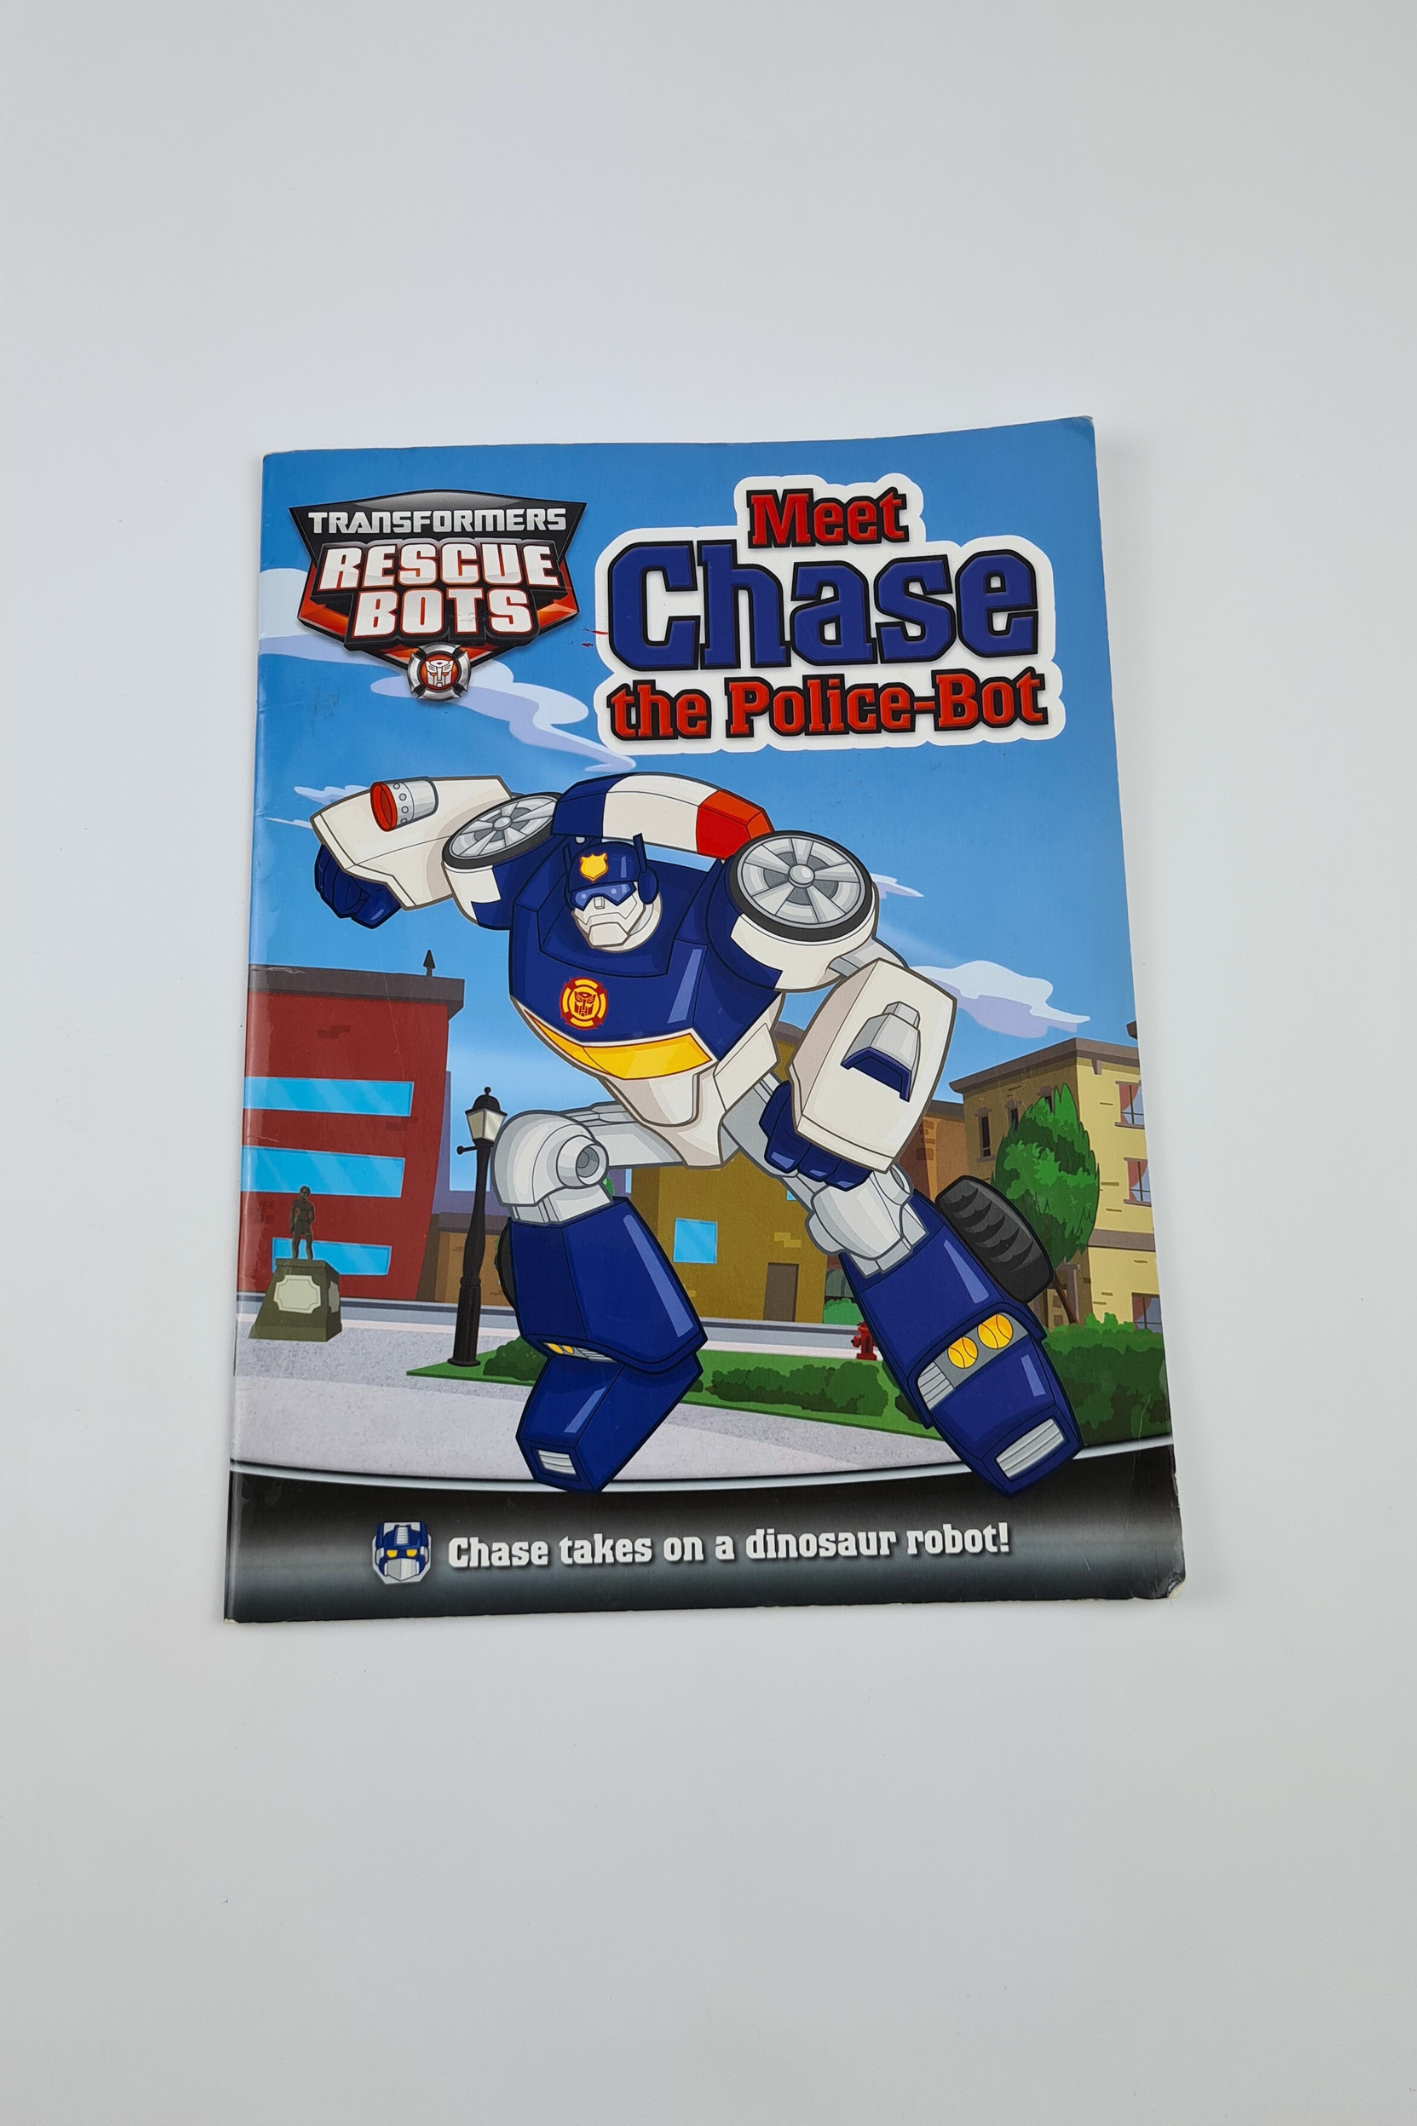 Rencontrez Chase, le livre d'histoires du robot policier